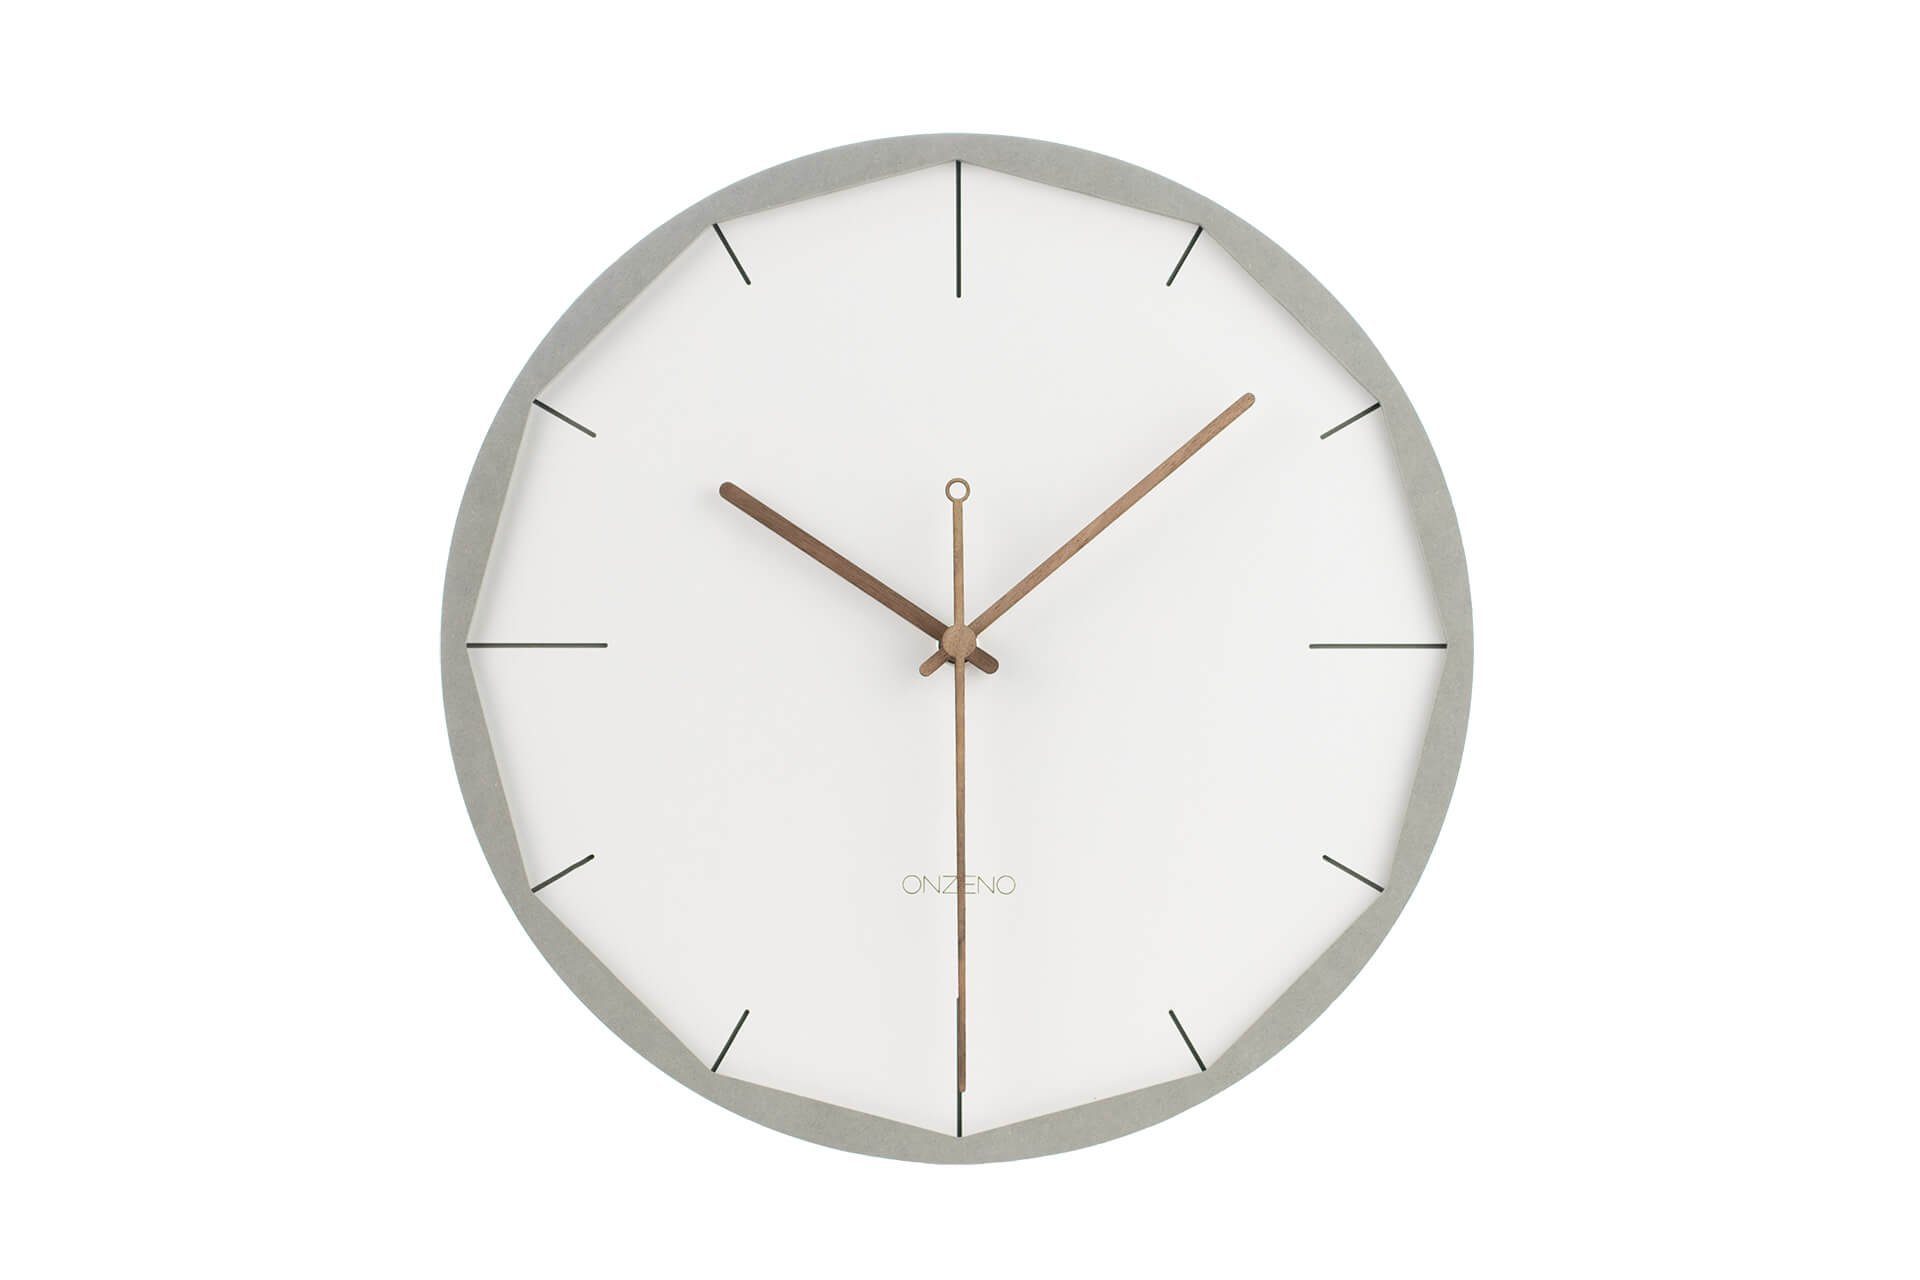 ONZENO Wanduhr THE EDGY. 29x29x0.5 cm (handgefertigte Design-Uhr)